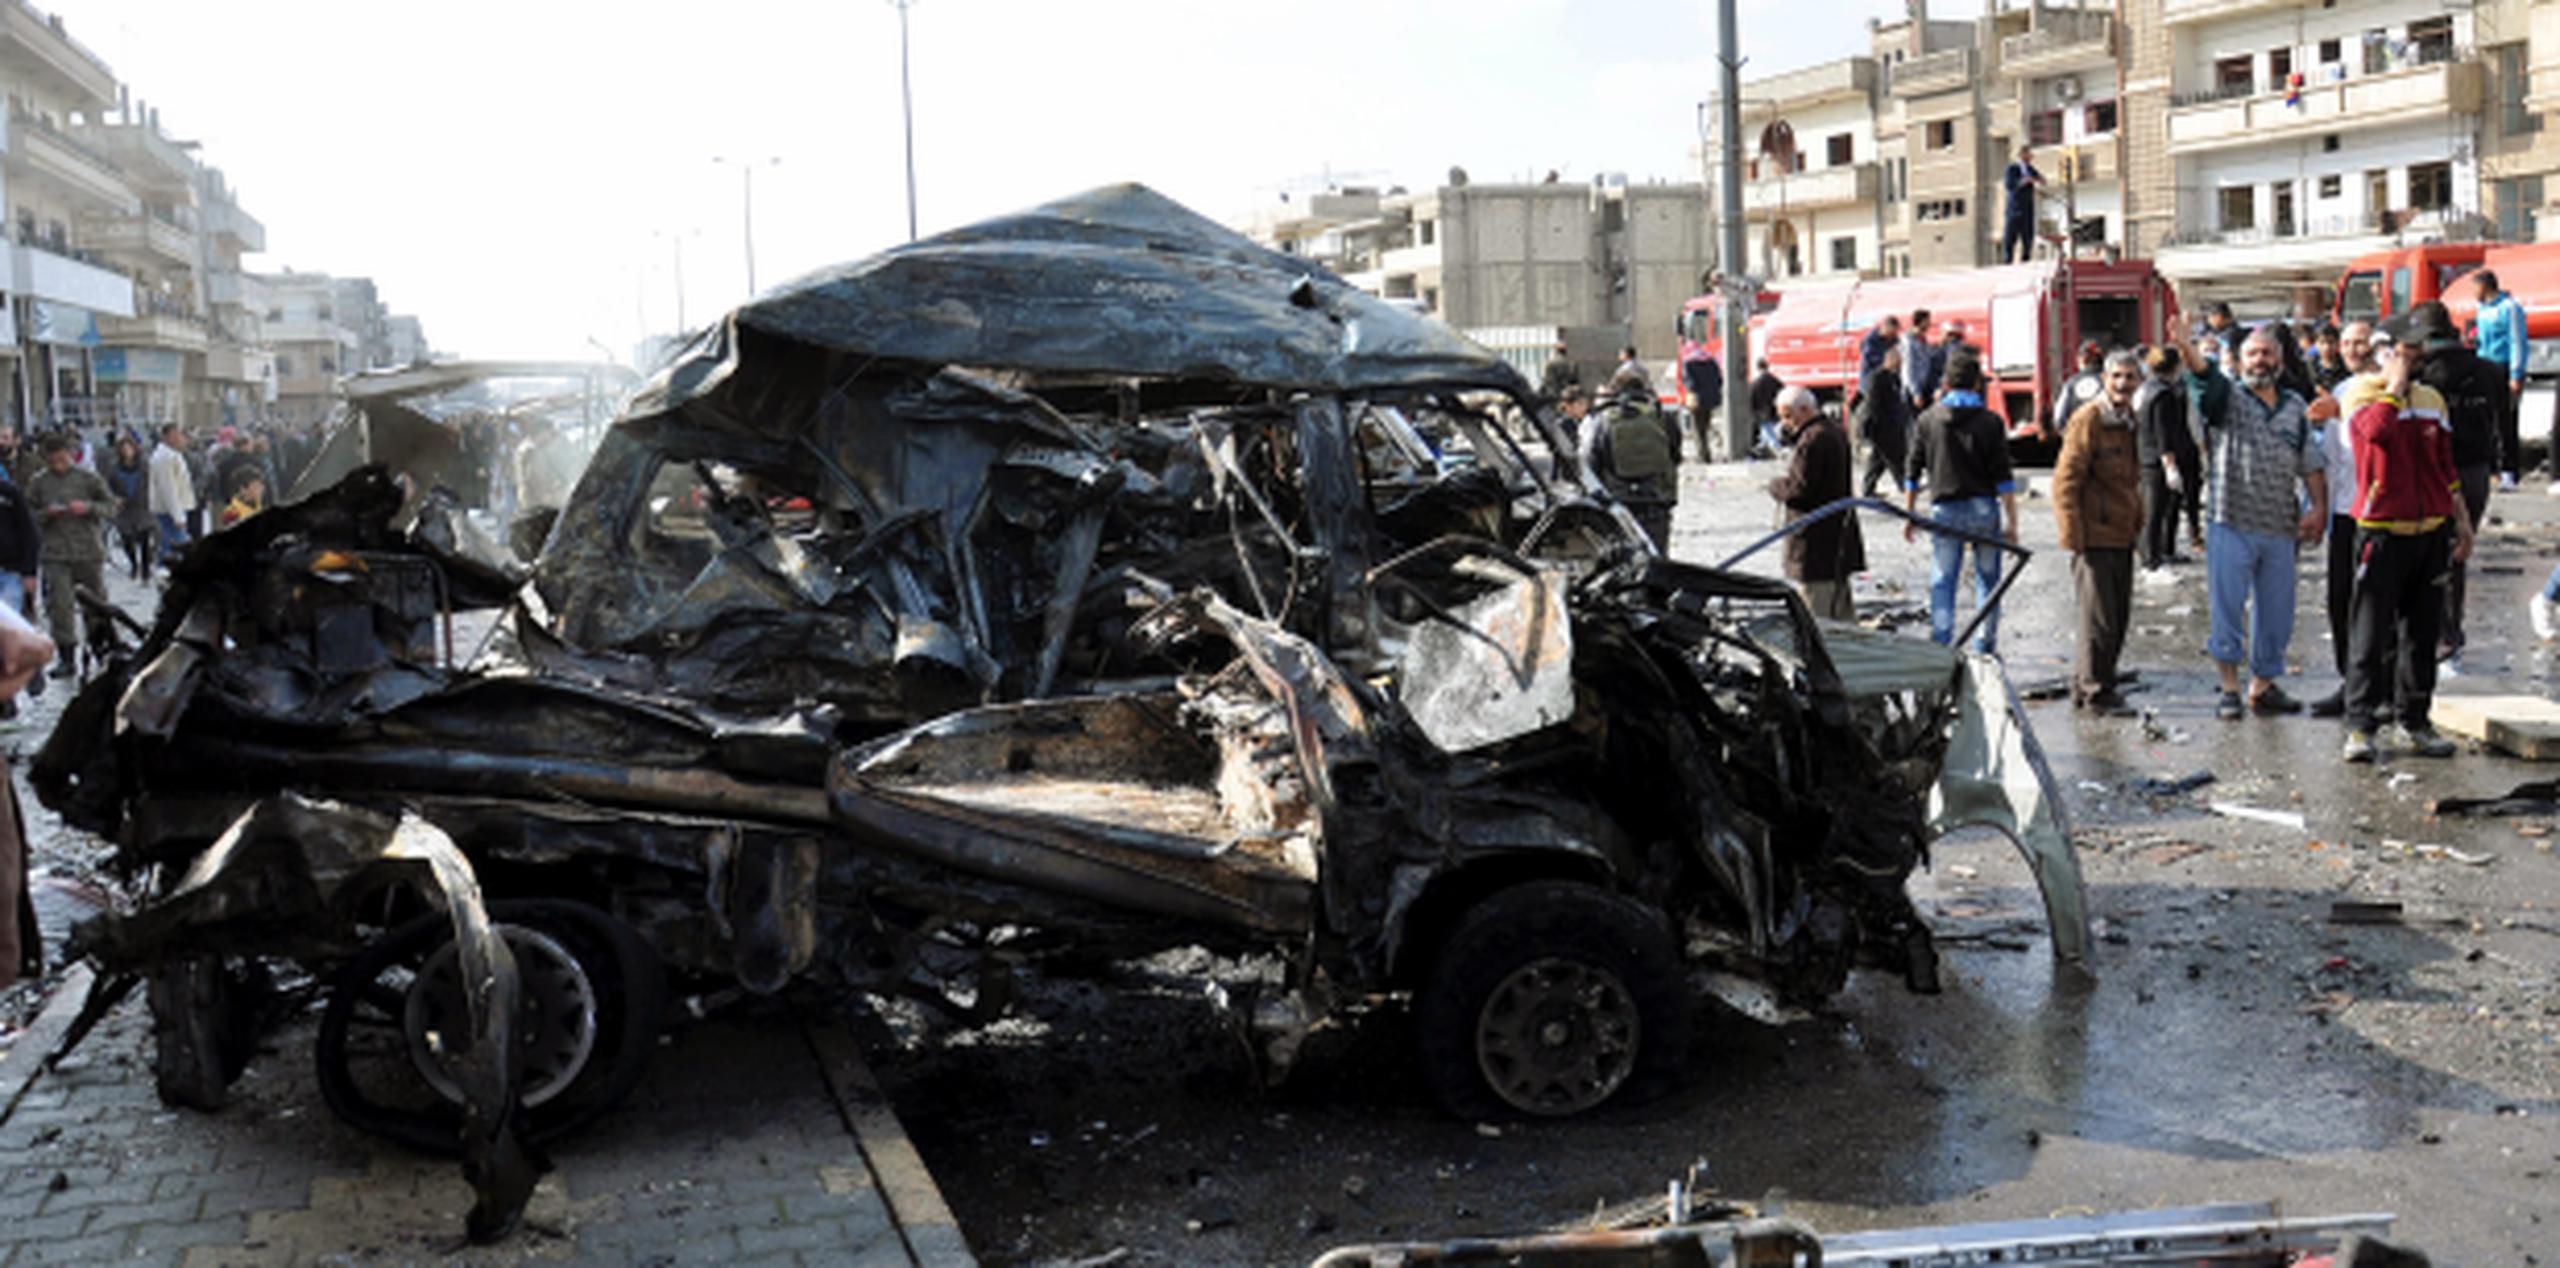 Uno de los dos vehículos cargados de explosivos, en el barrio Al Zahraa, Siria, que mataron a 46 personas. (AP)